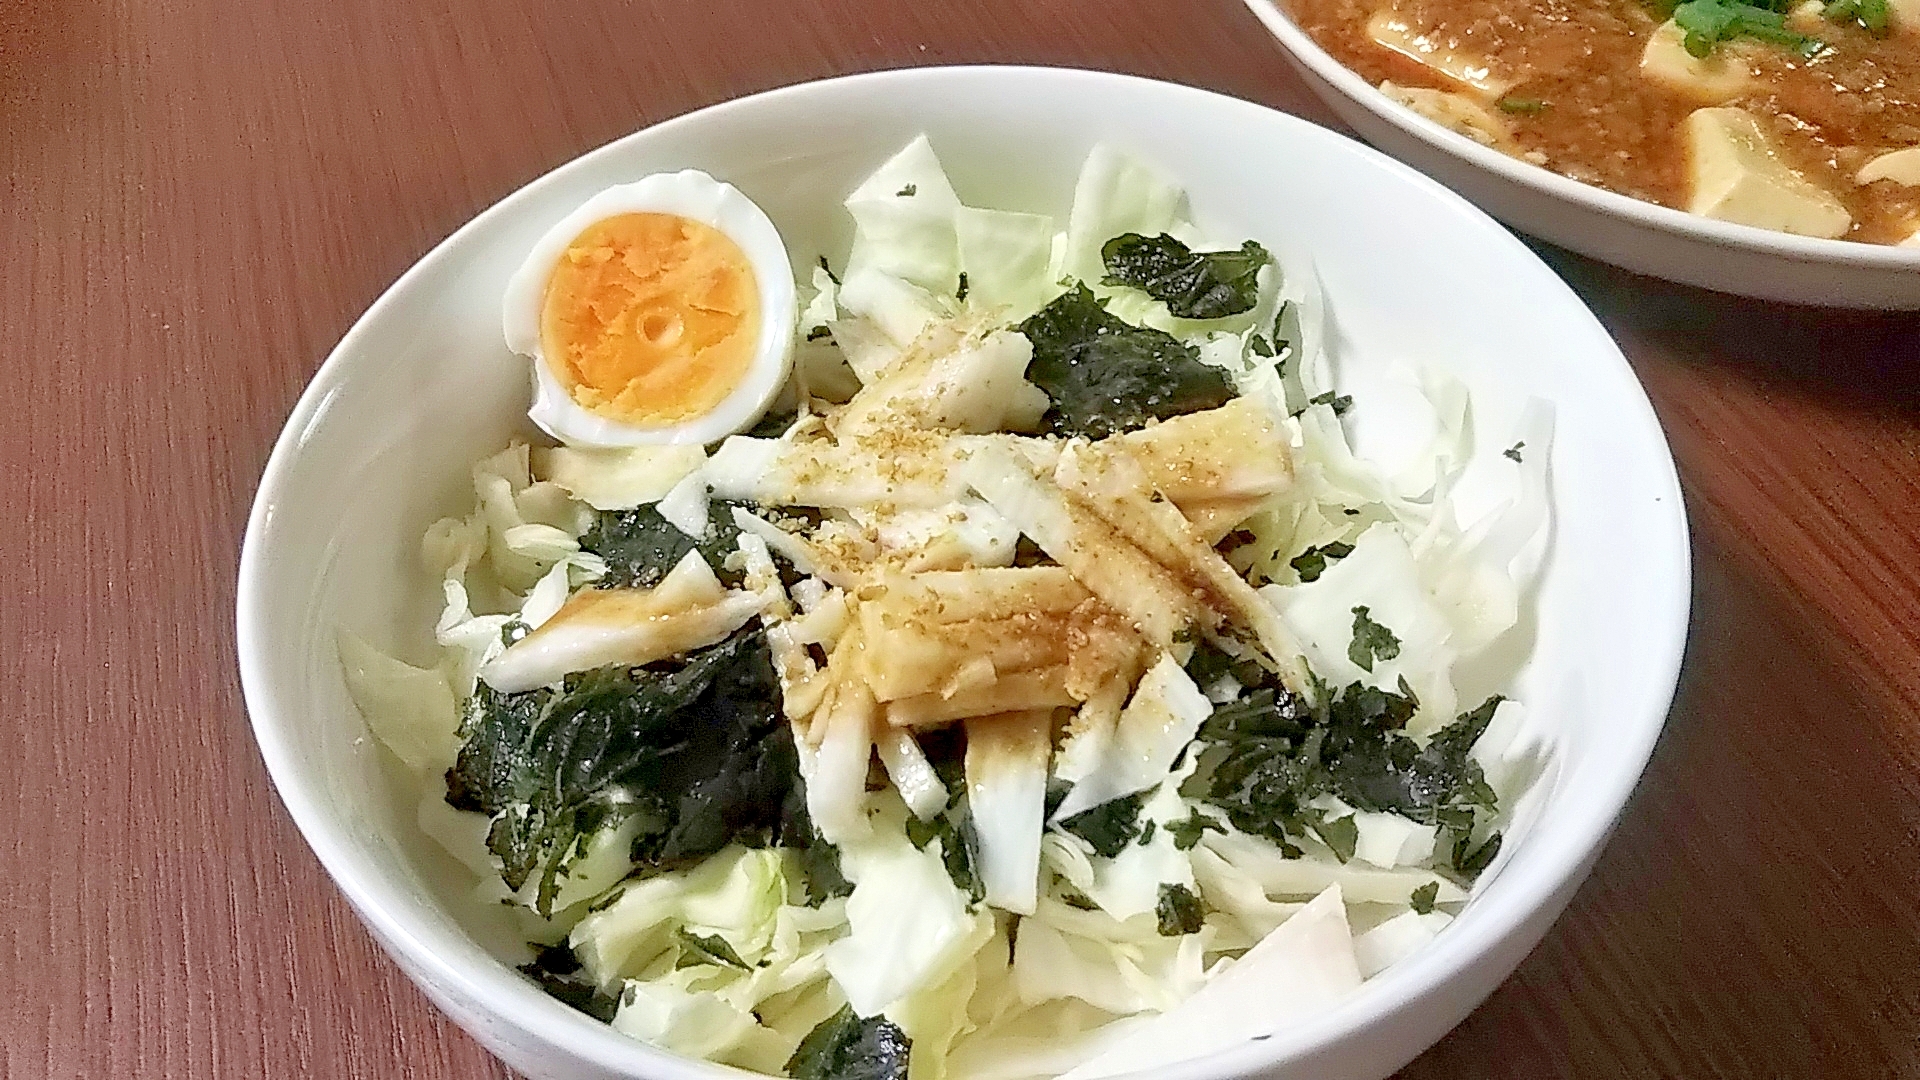 おつまみにも☆長芋・わかめ・キャベツの健康サラダ